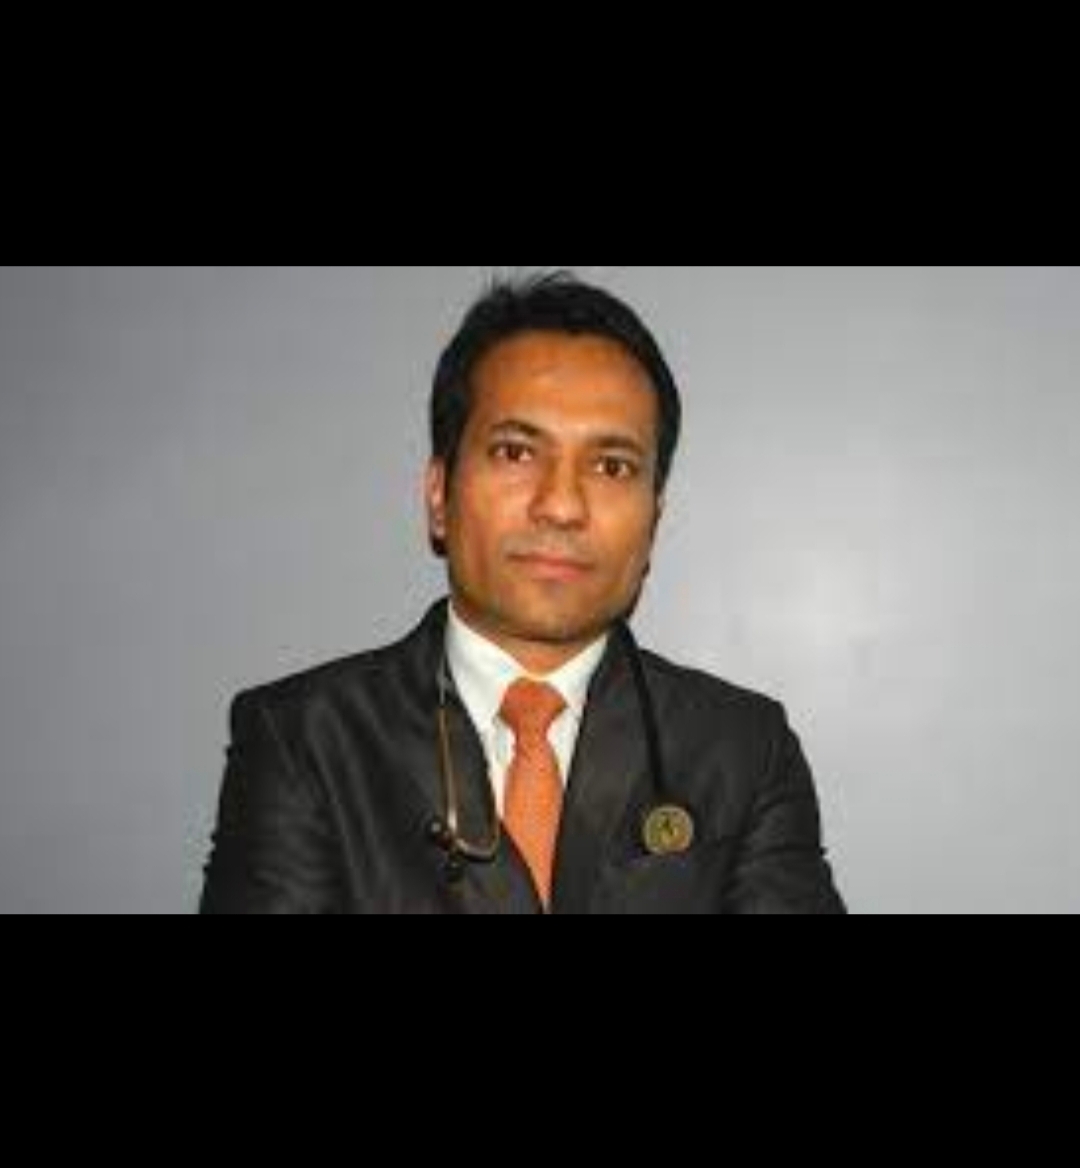 Dr. Srfaraj Majid